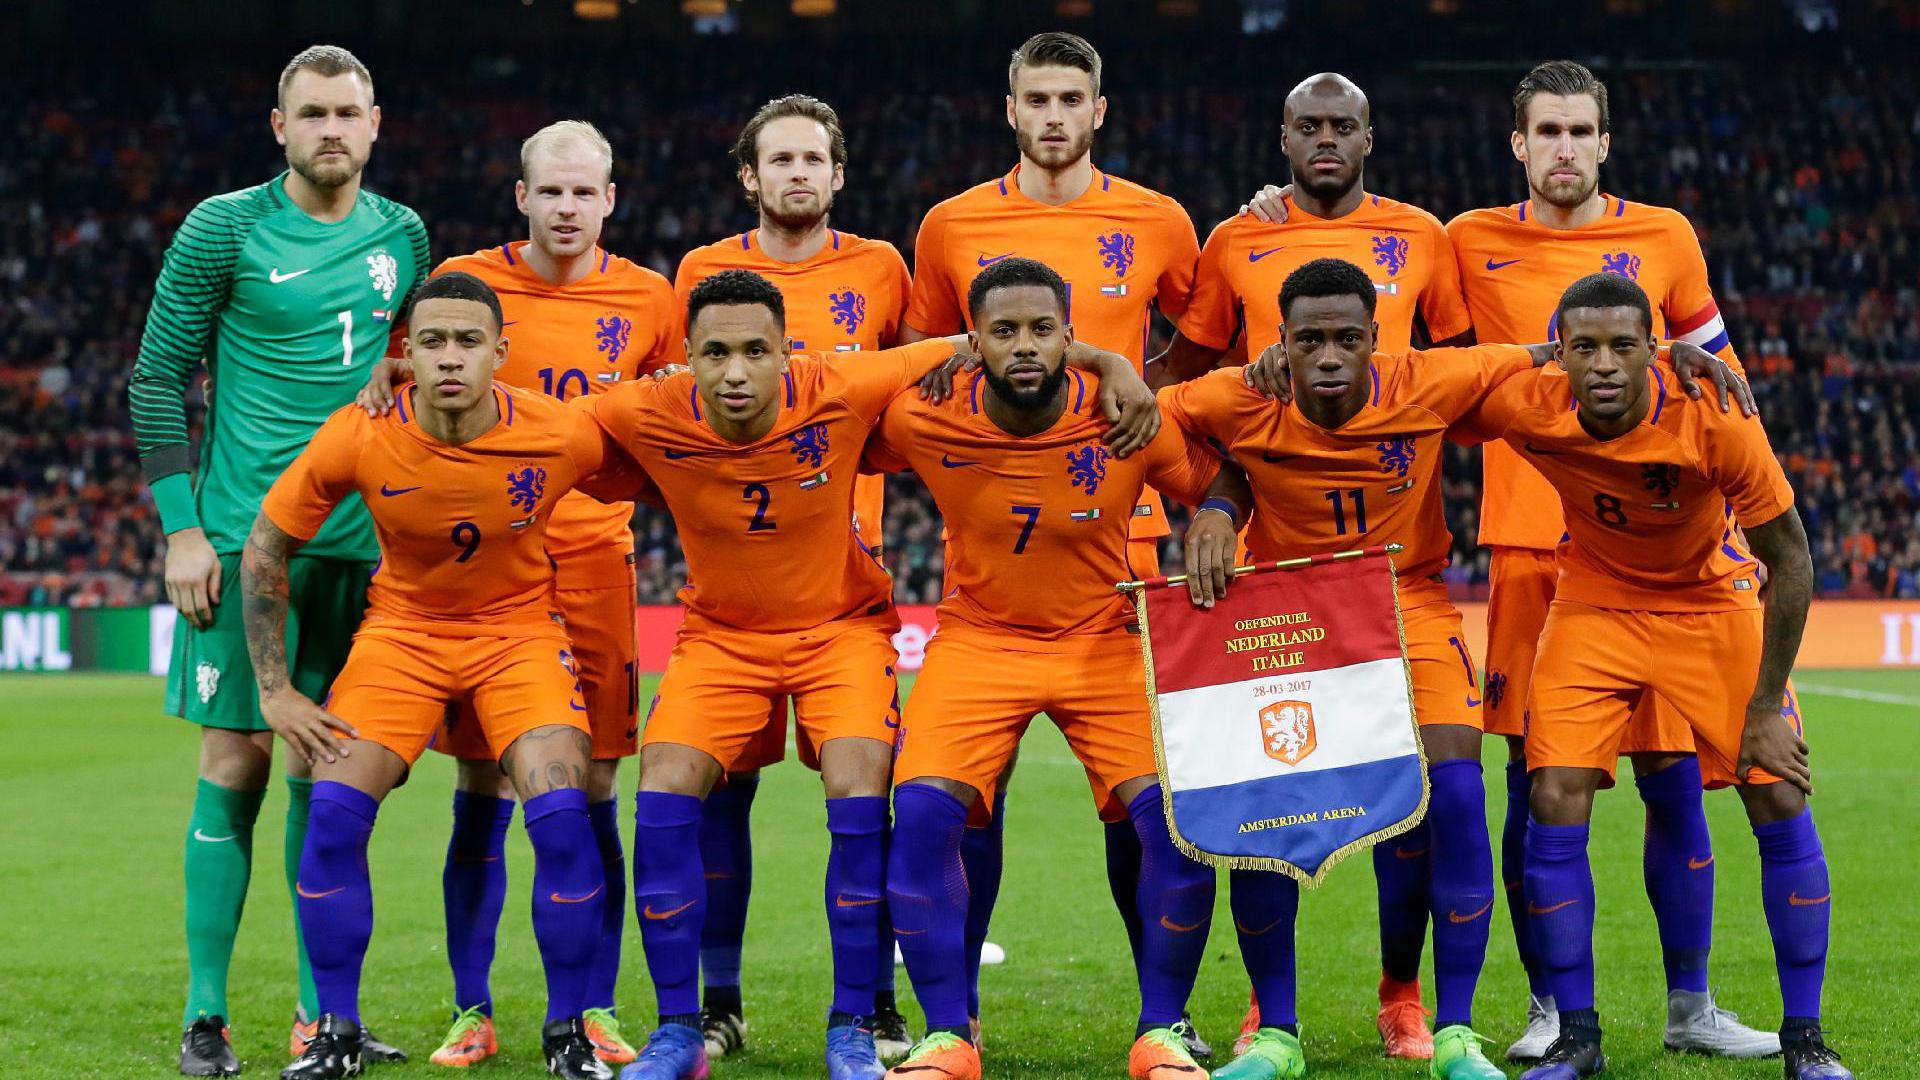 Nederlands Elftal Wallpaper / NETHERLANDS WORLD CUP 2014 WALLPAPER